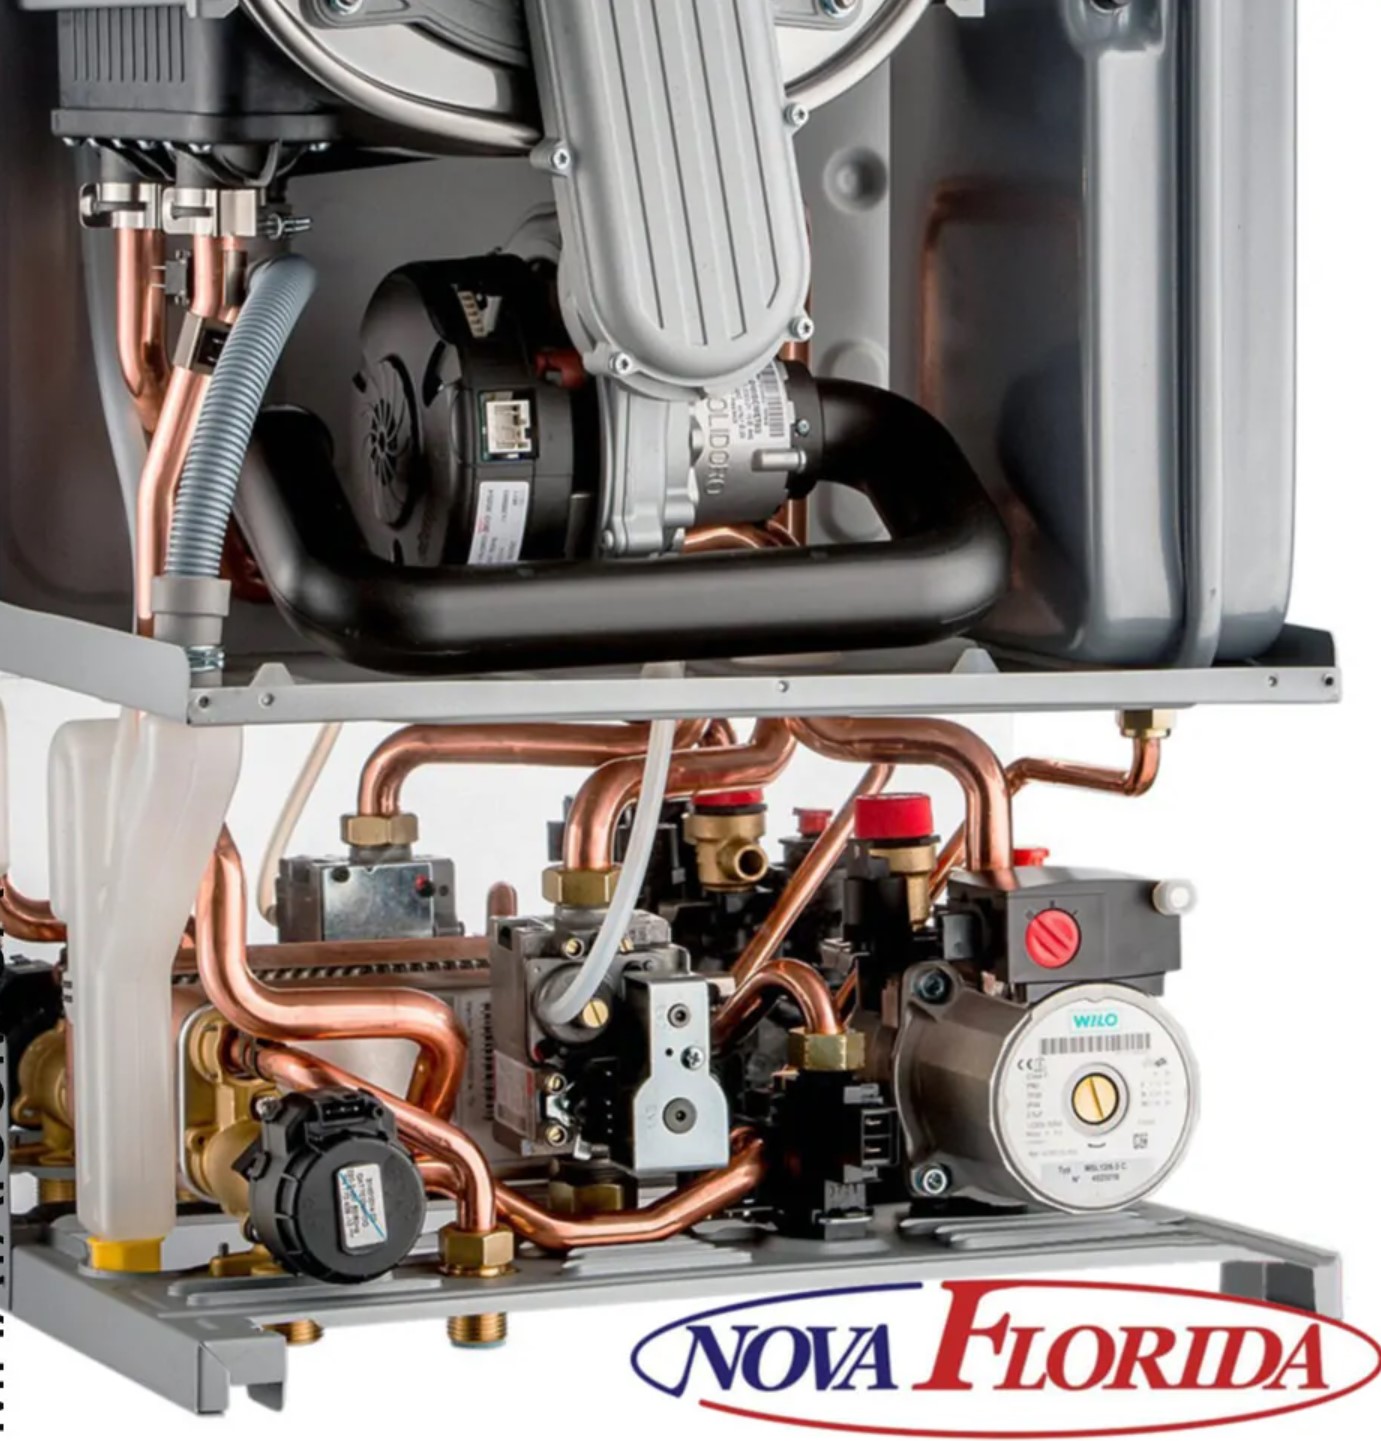 Газовый котел Nova Florida Virgo RBTFS 24 цена 44367.00 грн - фотография 2